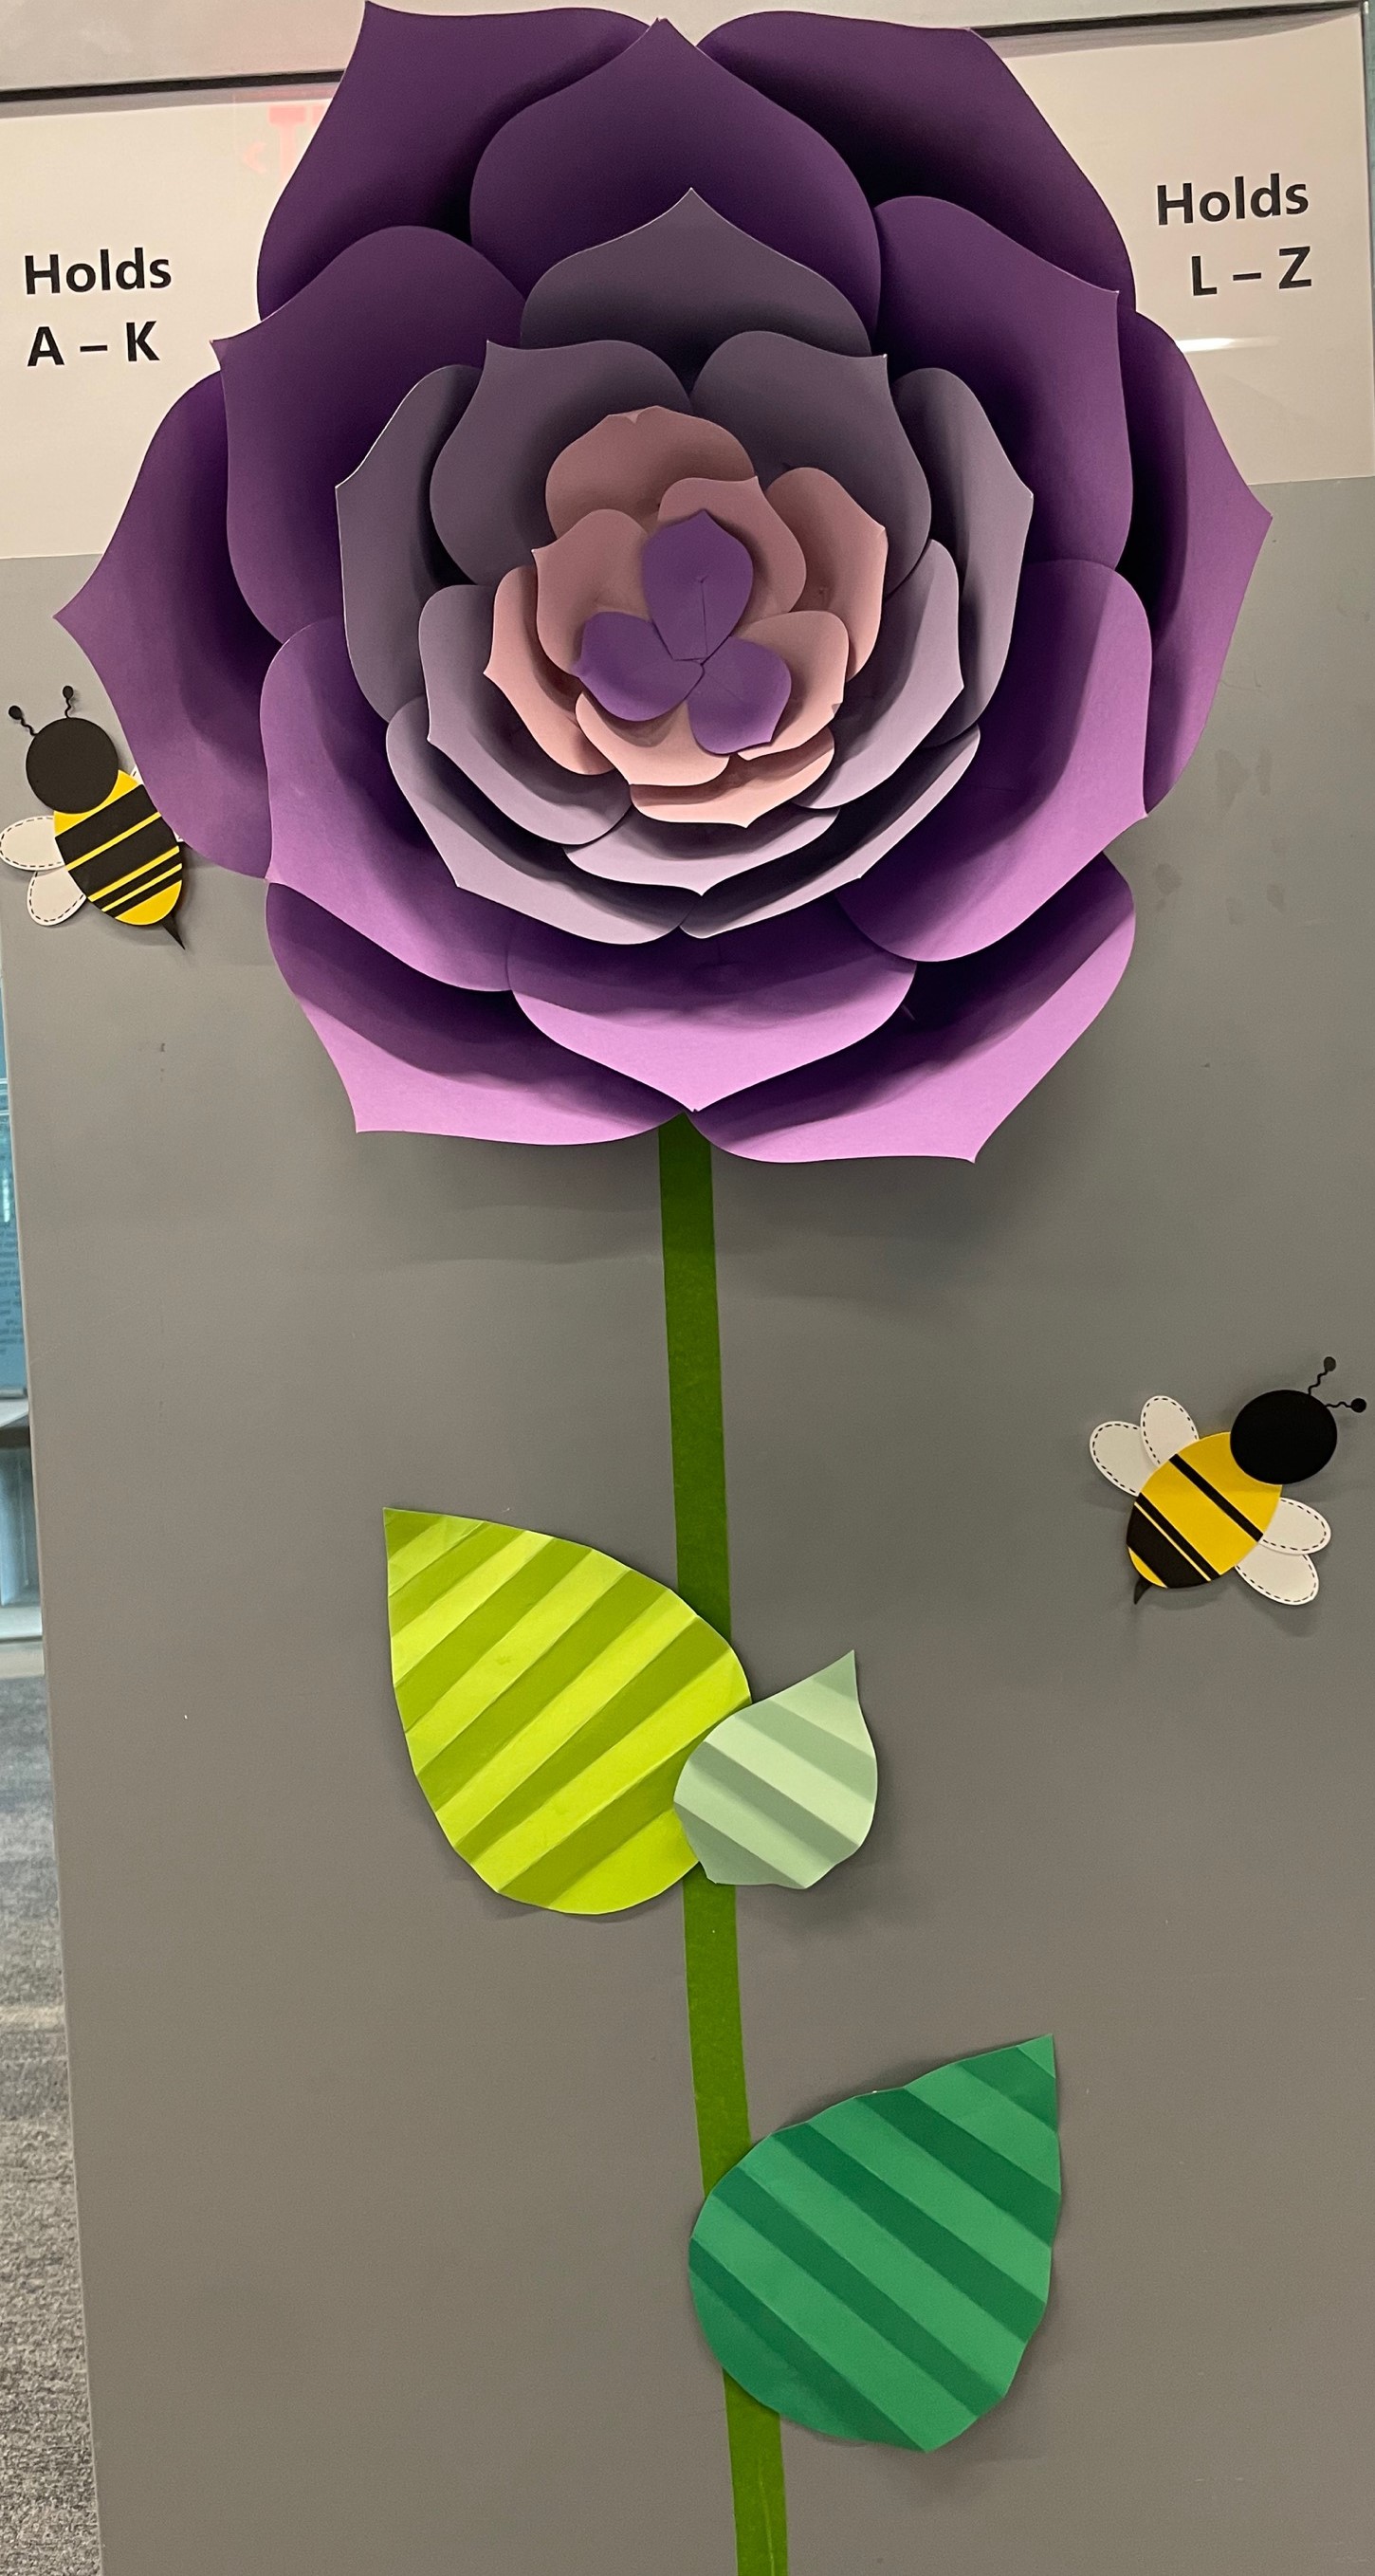 Manualidades para adultos : Flores en 3D de papel